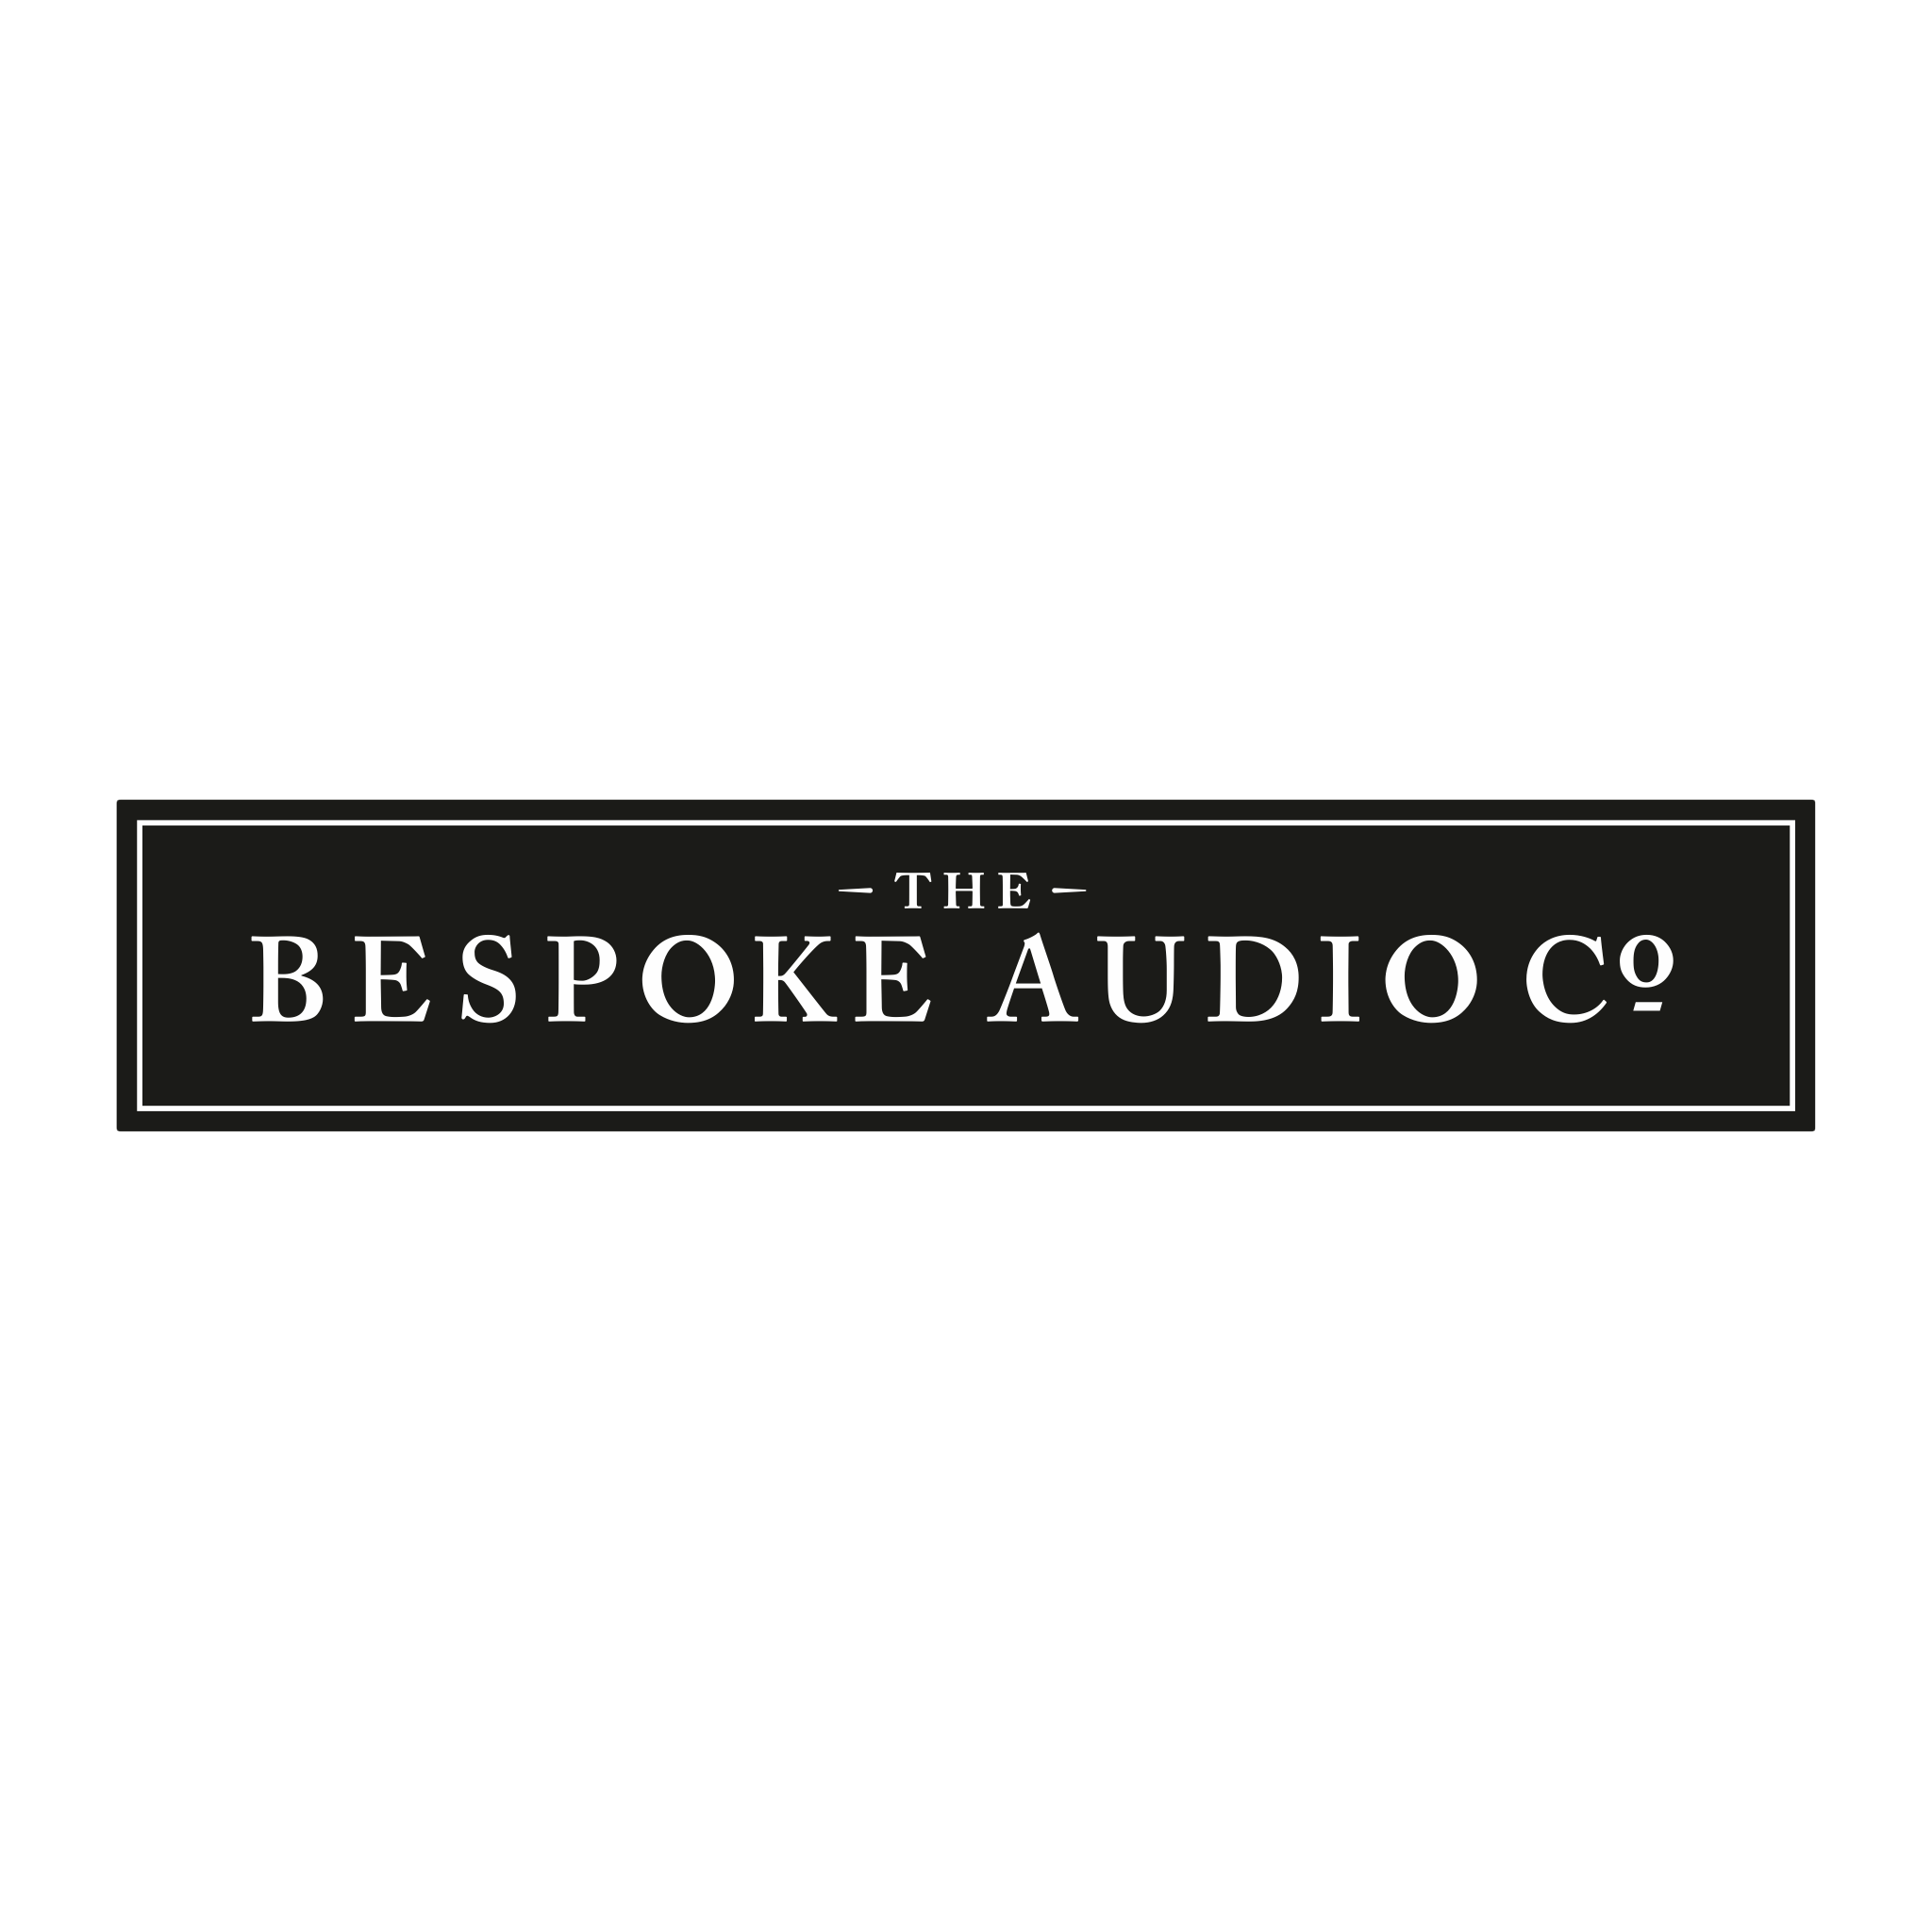 The bespoke audio company logo